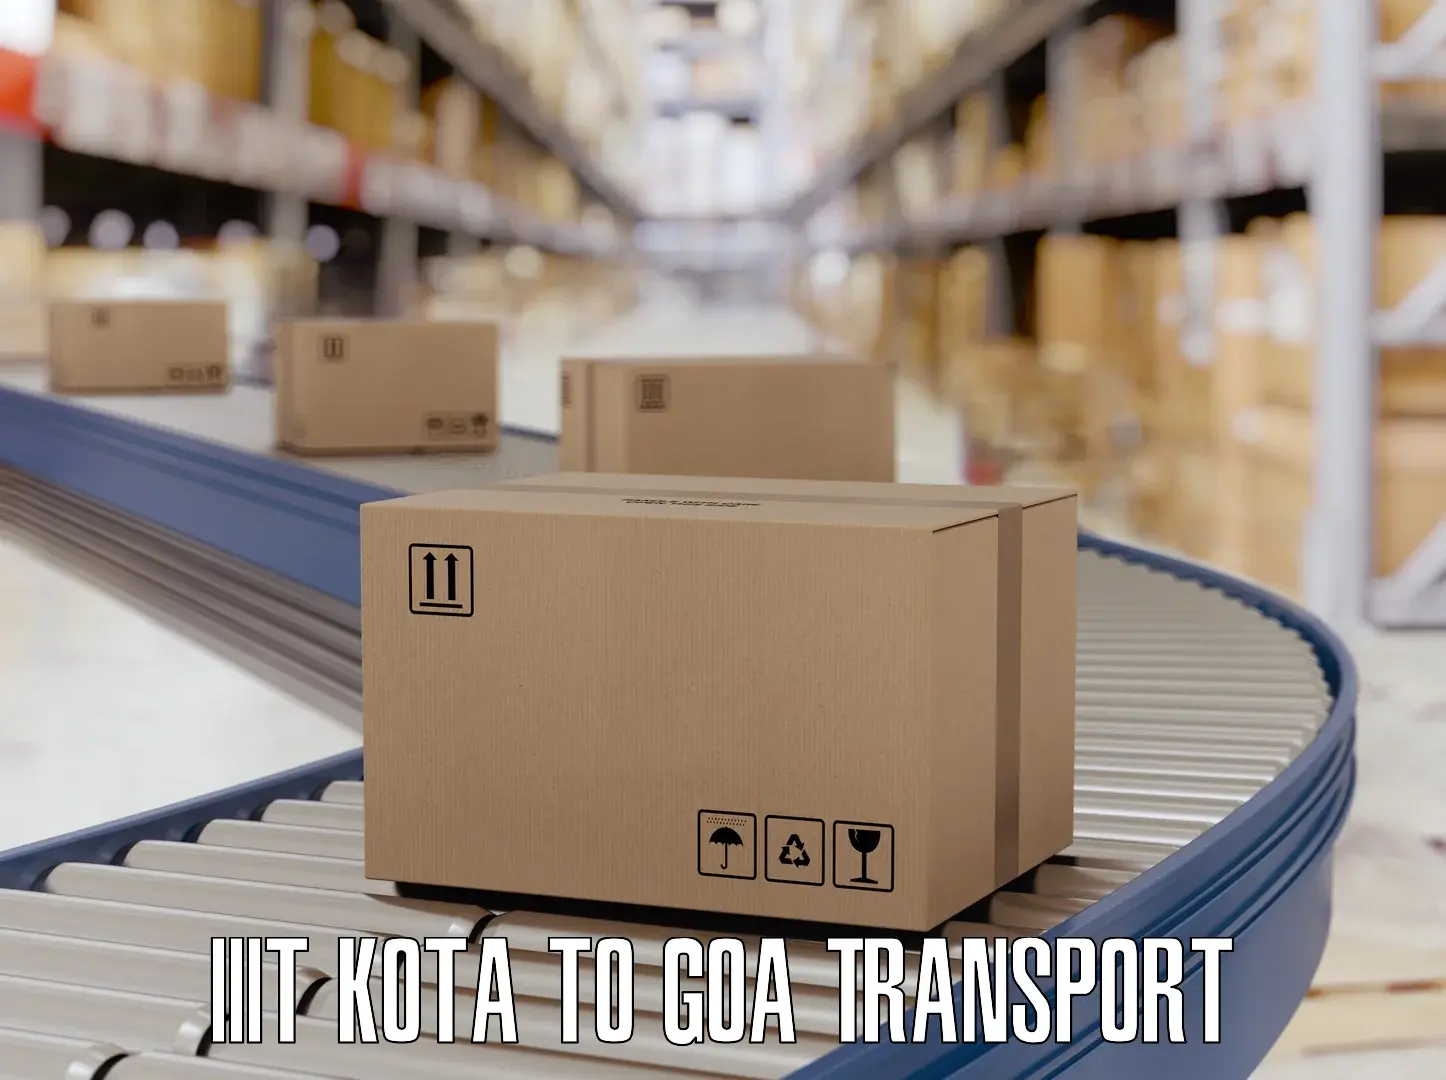 Interstate goods transport IIIT Kota to Goa